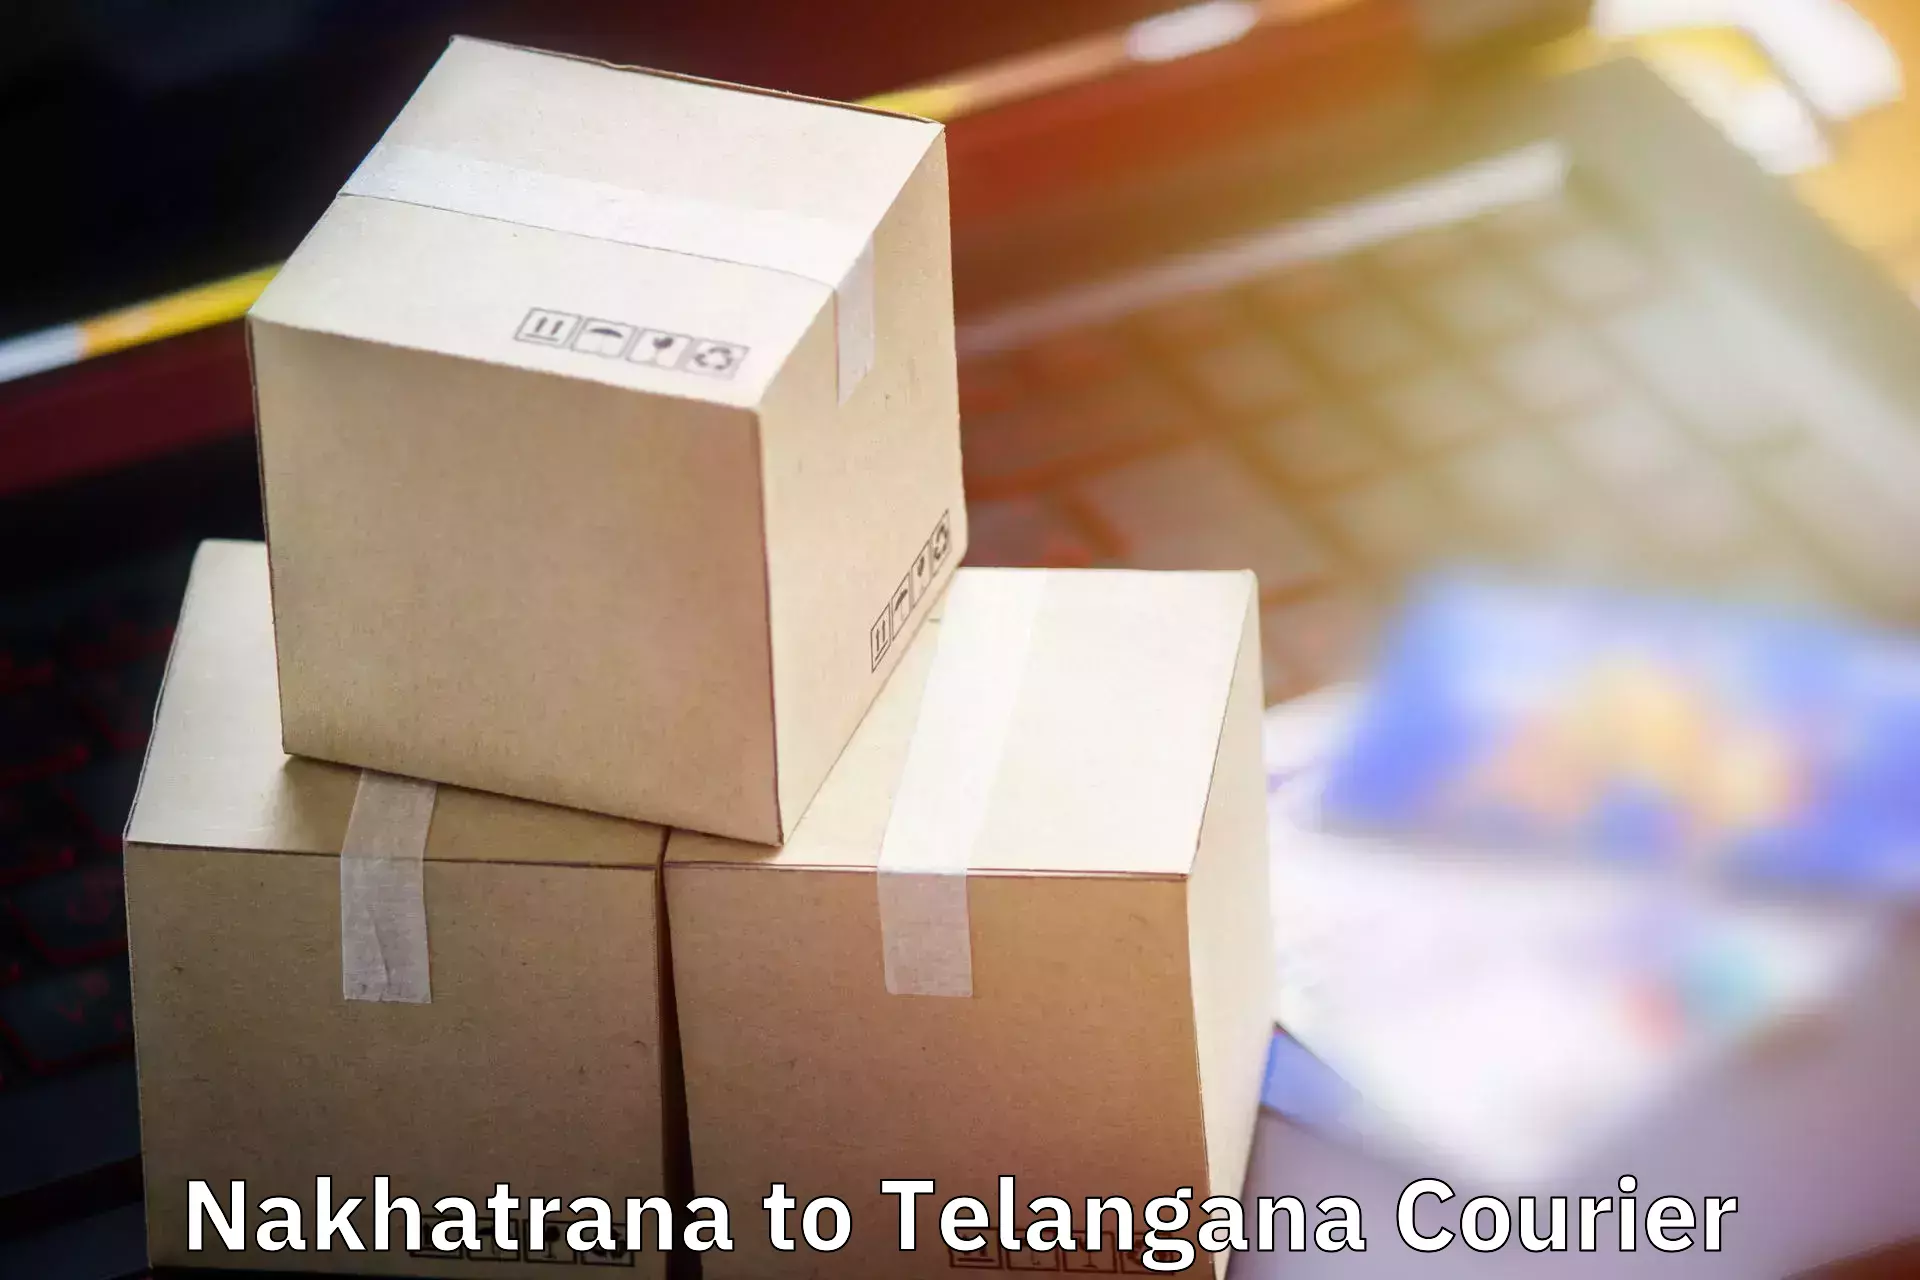 Luggage shipping service Nakhatrana to Kothagudem